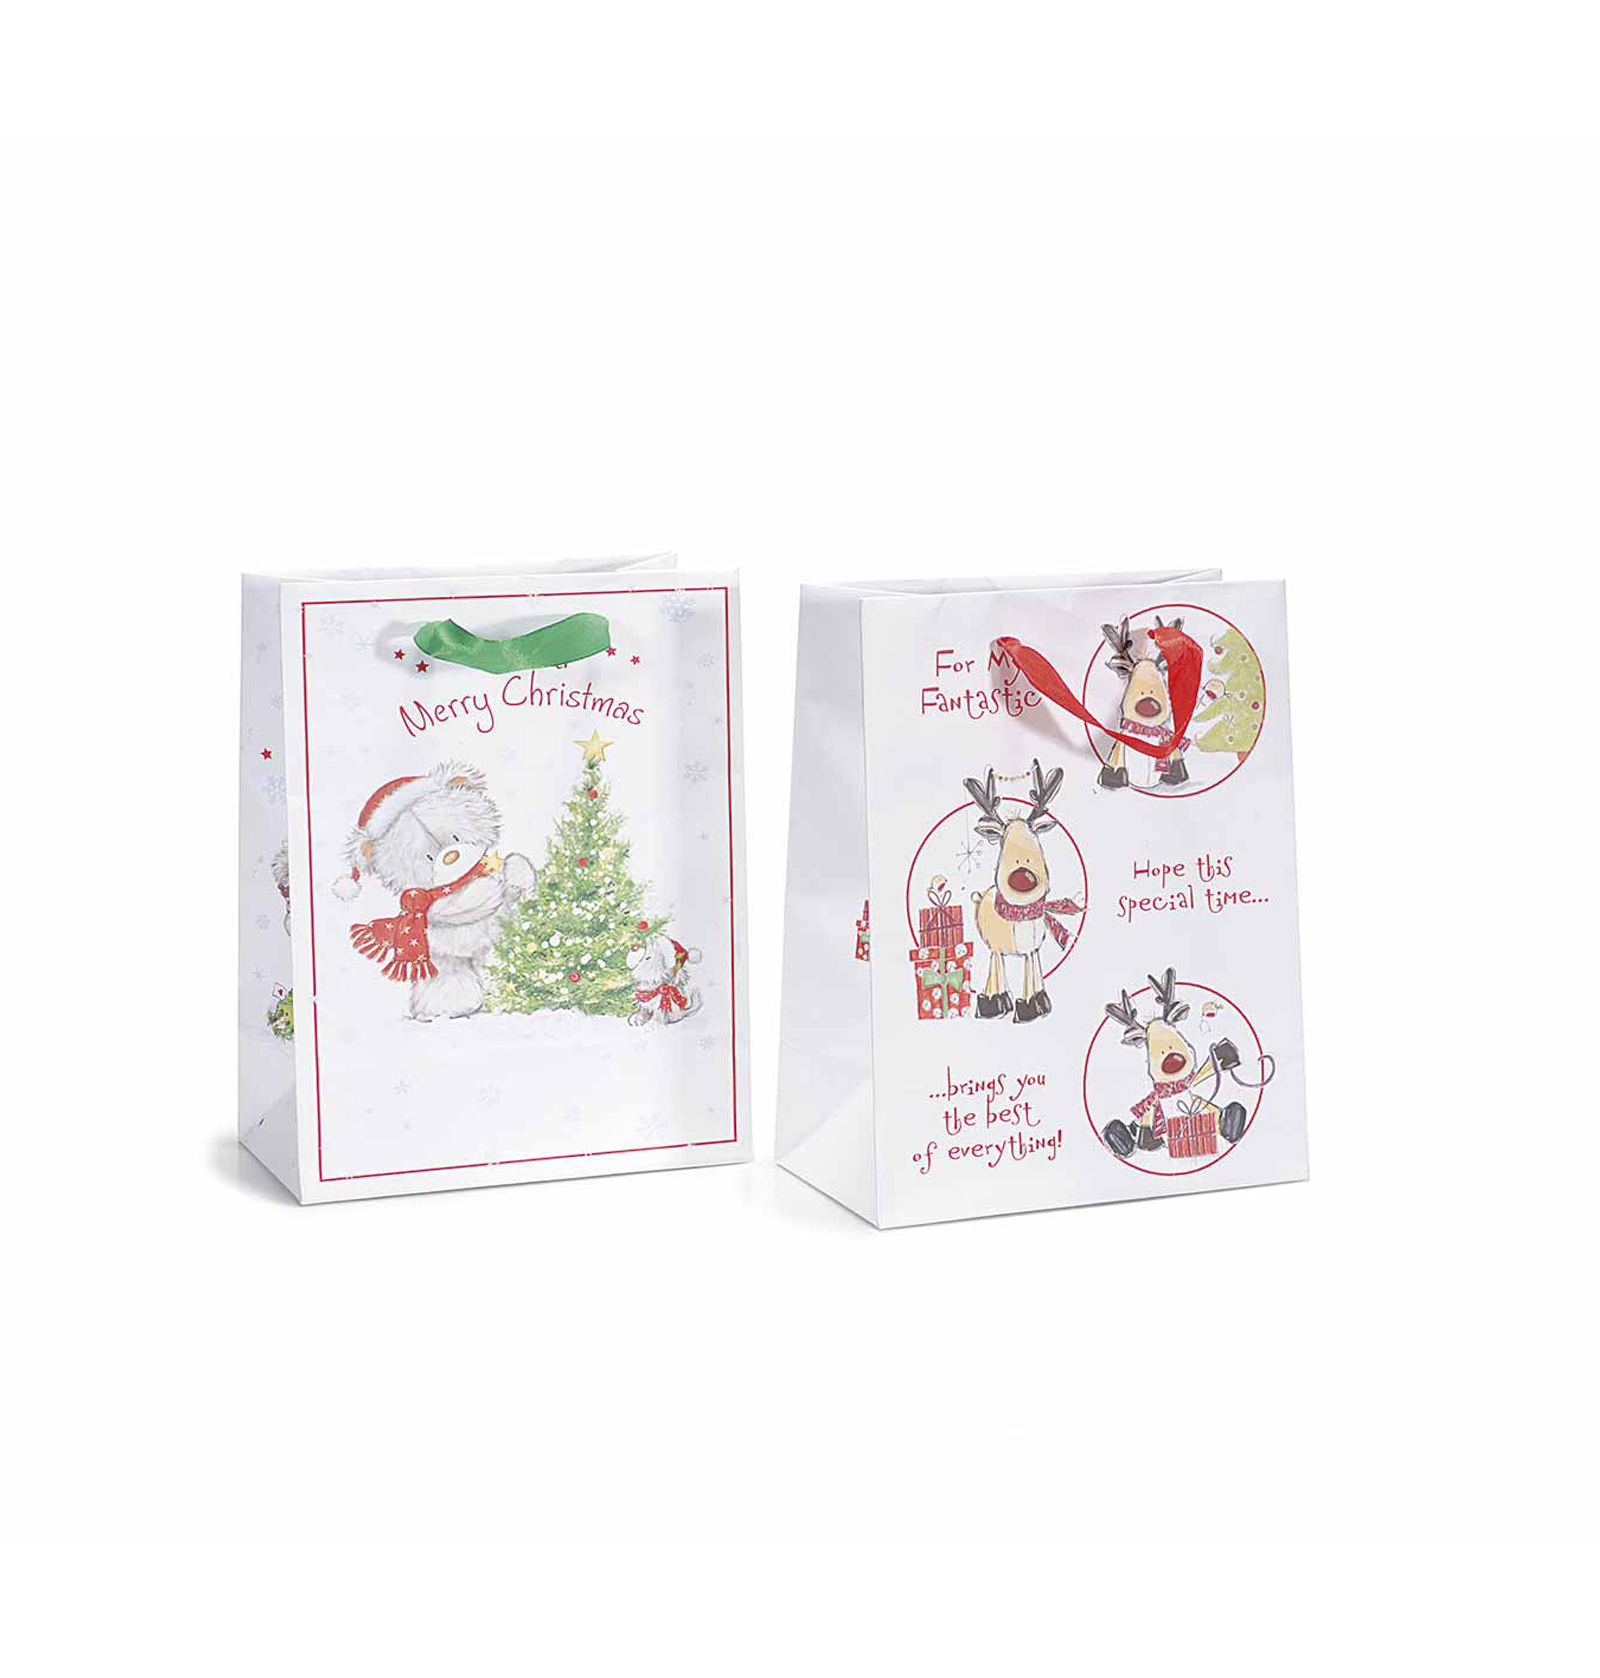 30Pz. Buste sacchetti da regalo in carta colorata con stampa natalizia: cm 18x10x23 H (c/manici34)